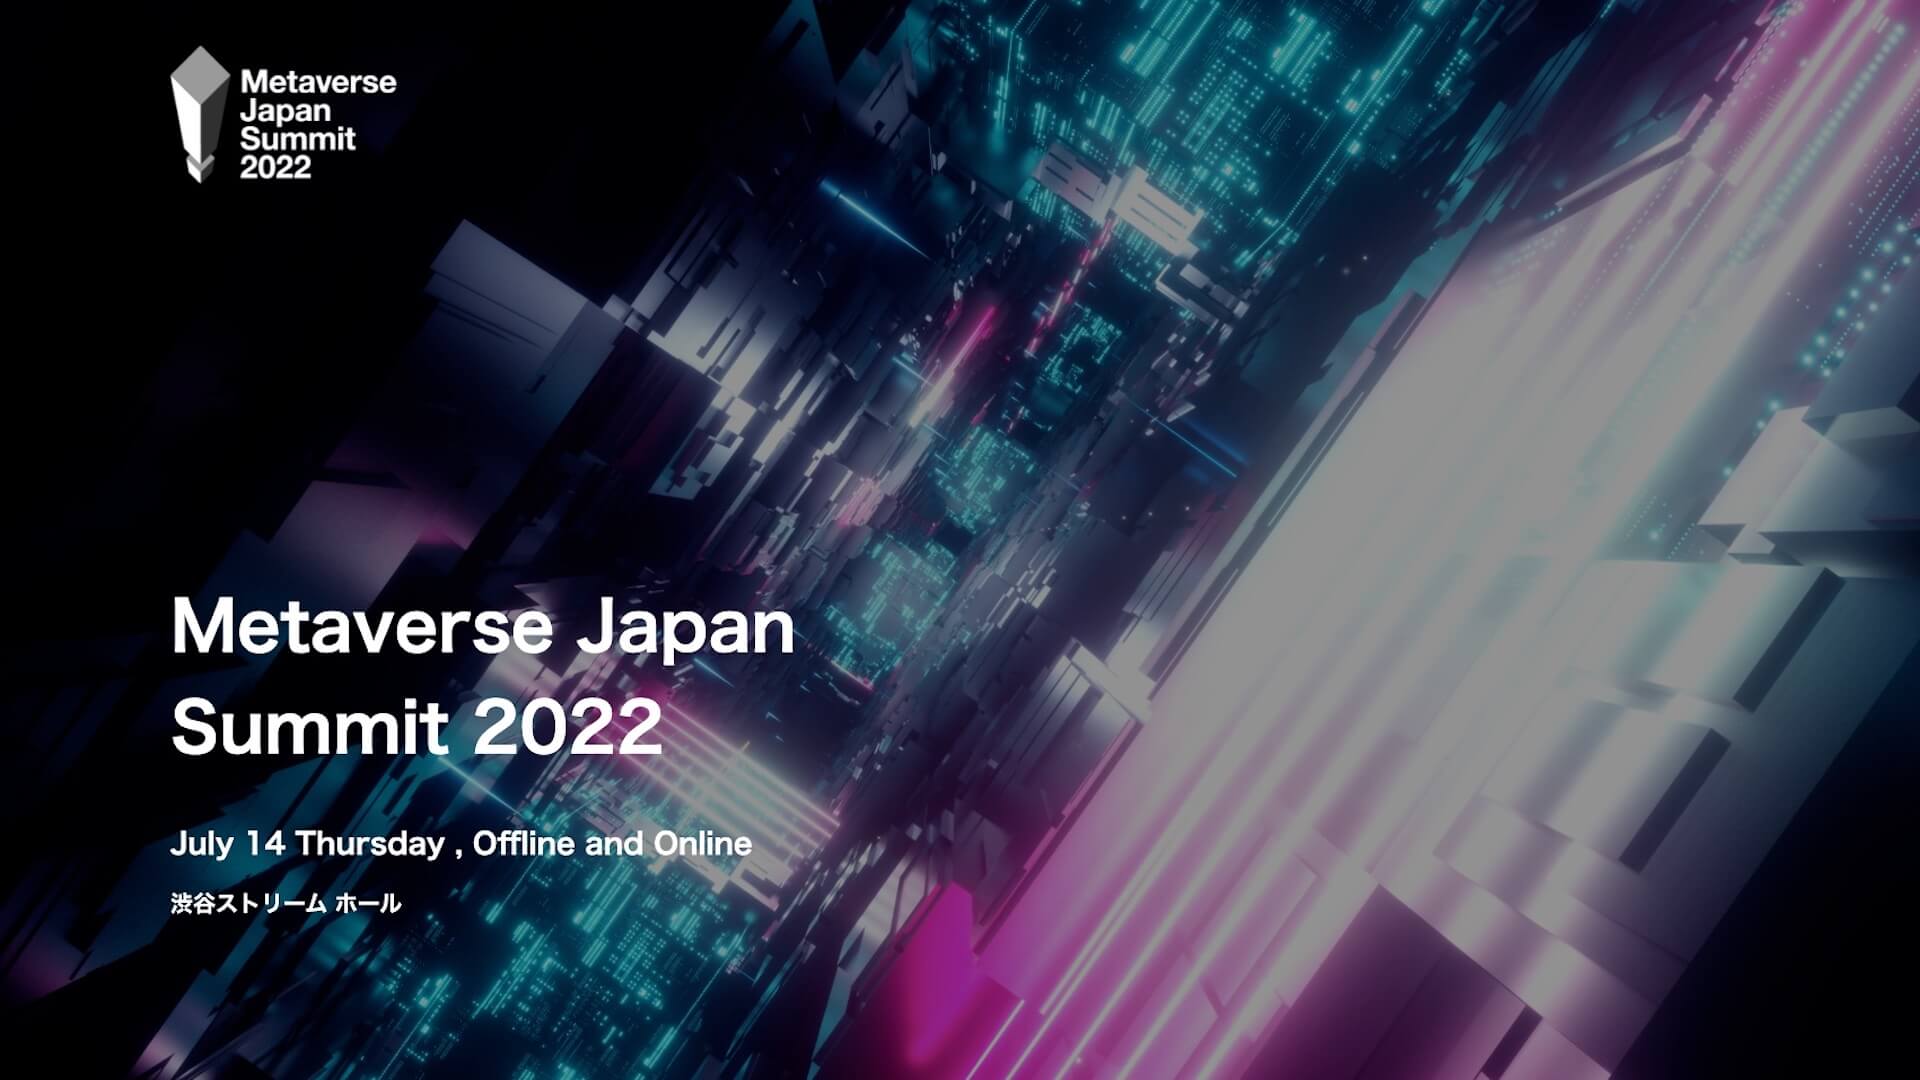 【Metaverse Japan Summit 2022】メタバースの社会実装に向けた課題や、未来を議論｜＜Metaverse Japan Summit 2022＞が渋谷ストリームホールで開催決定